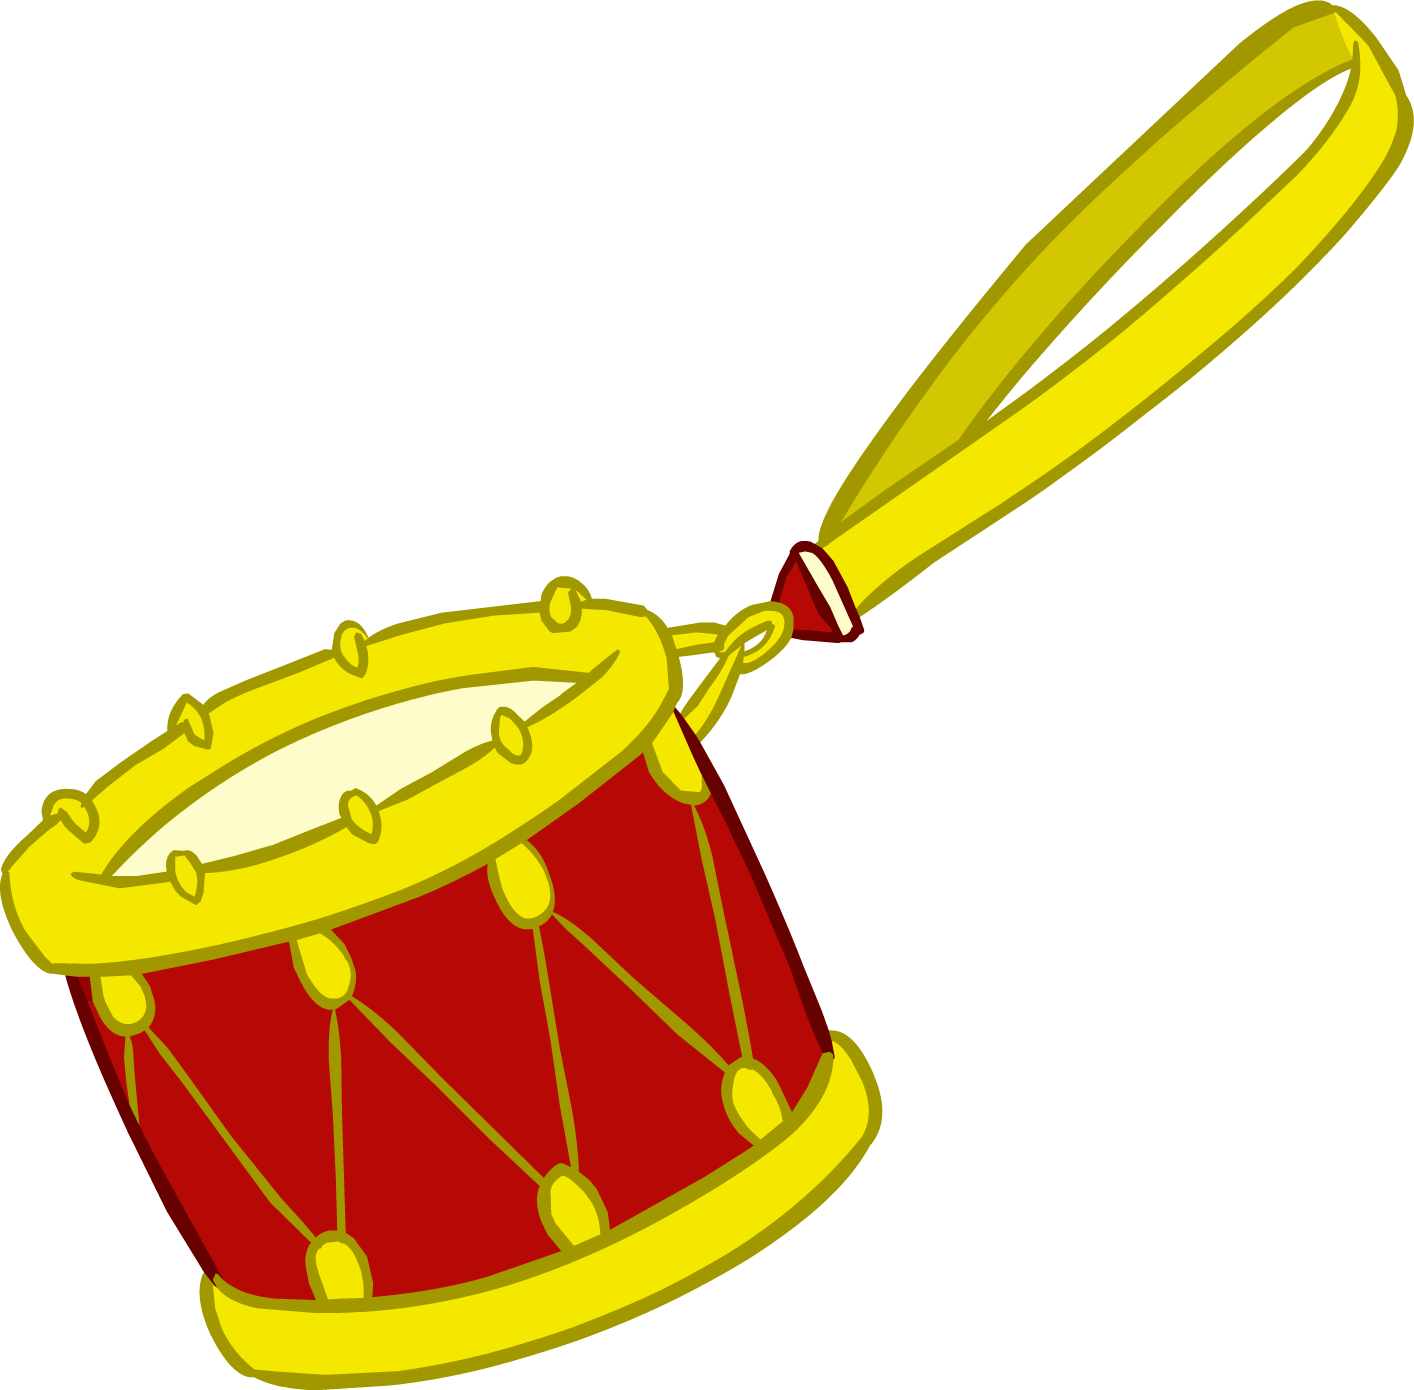 drum clipart drum indian